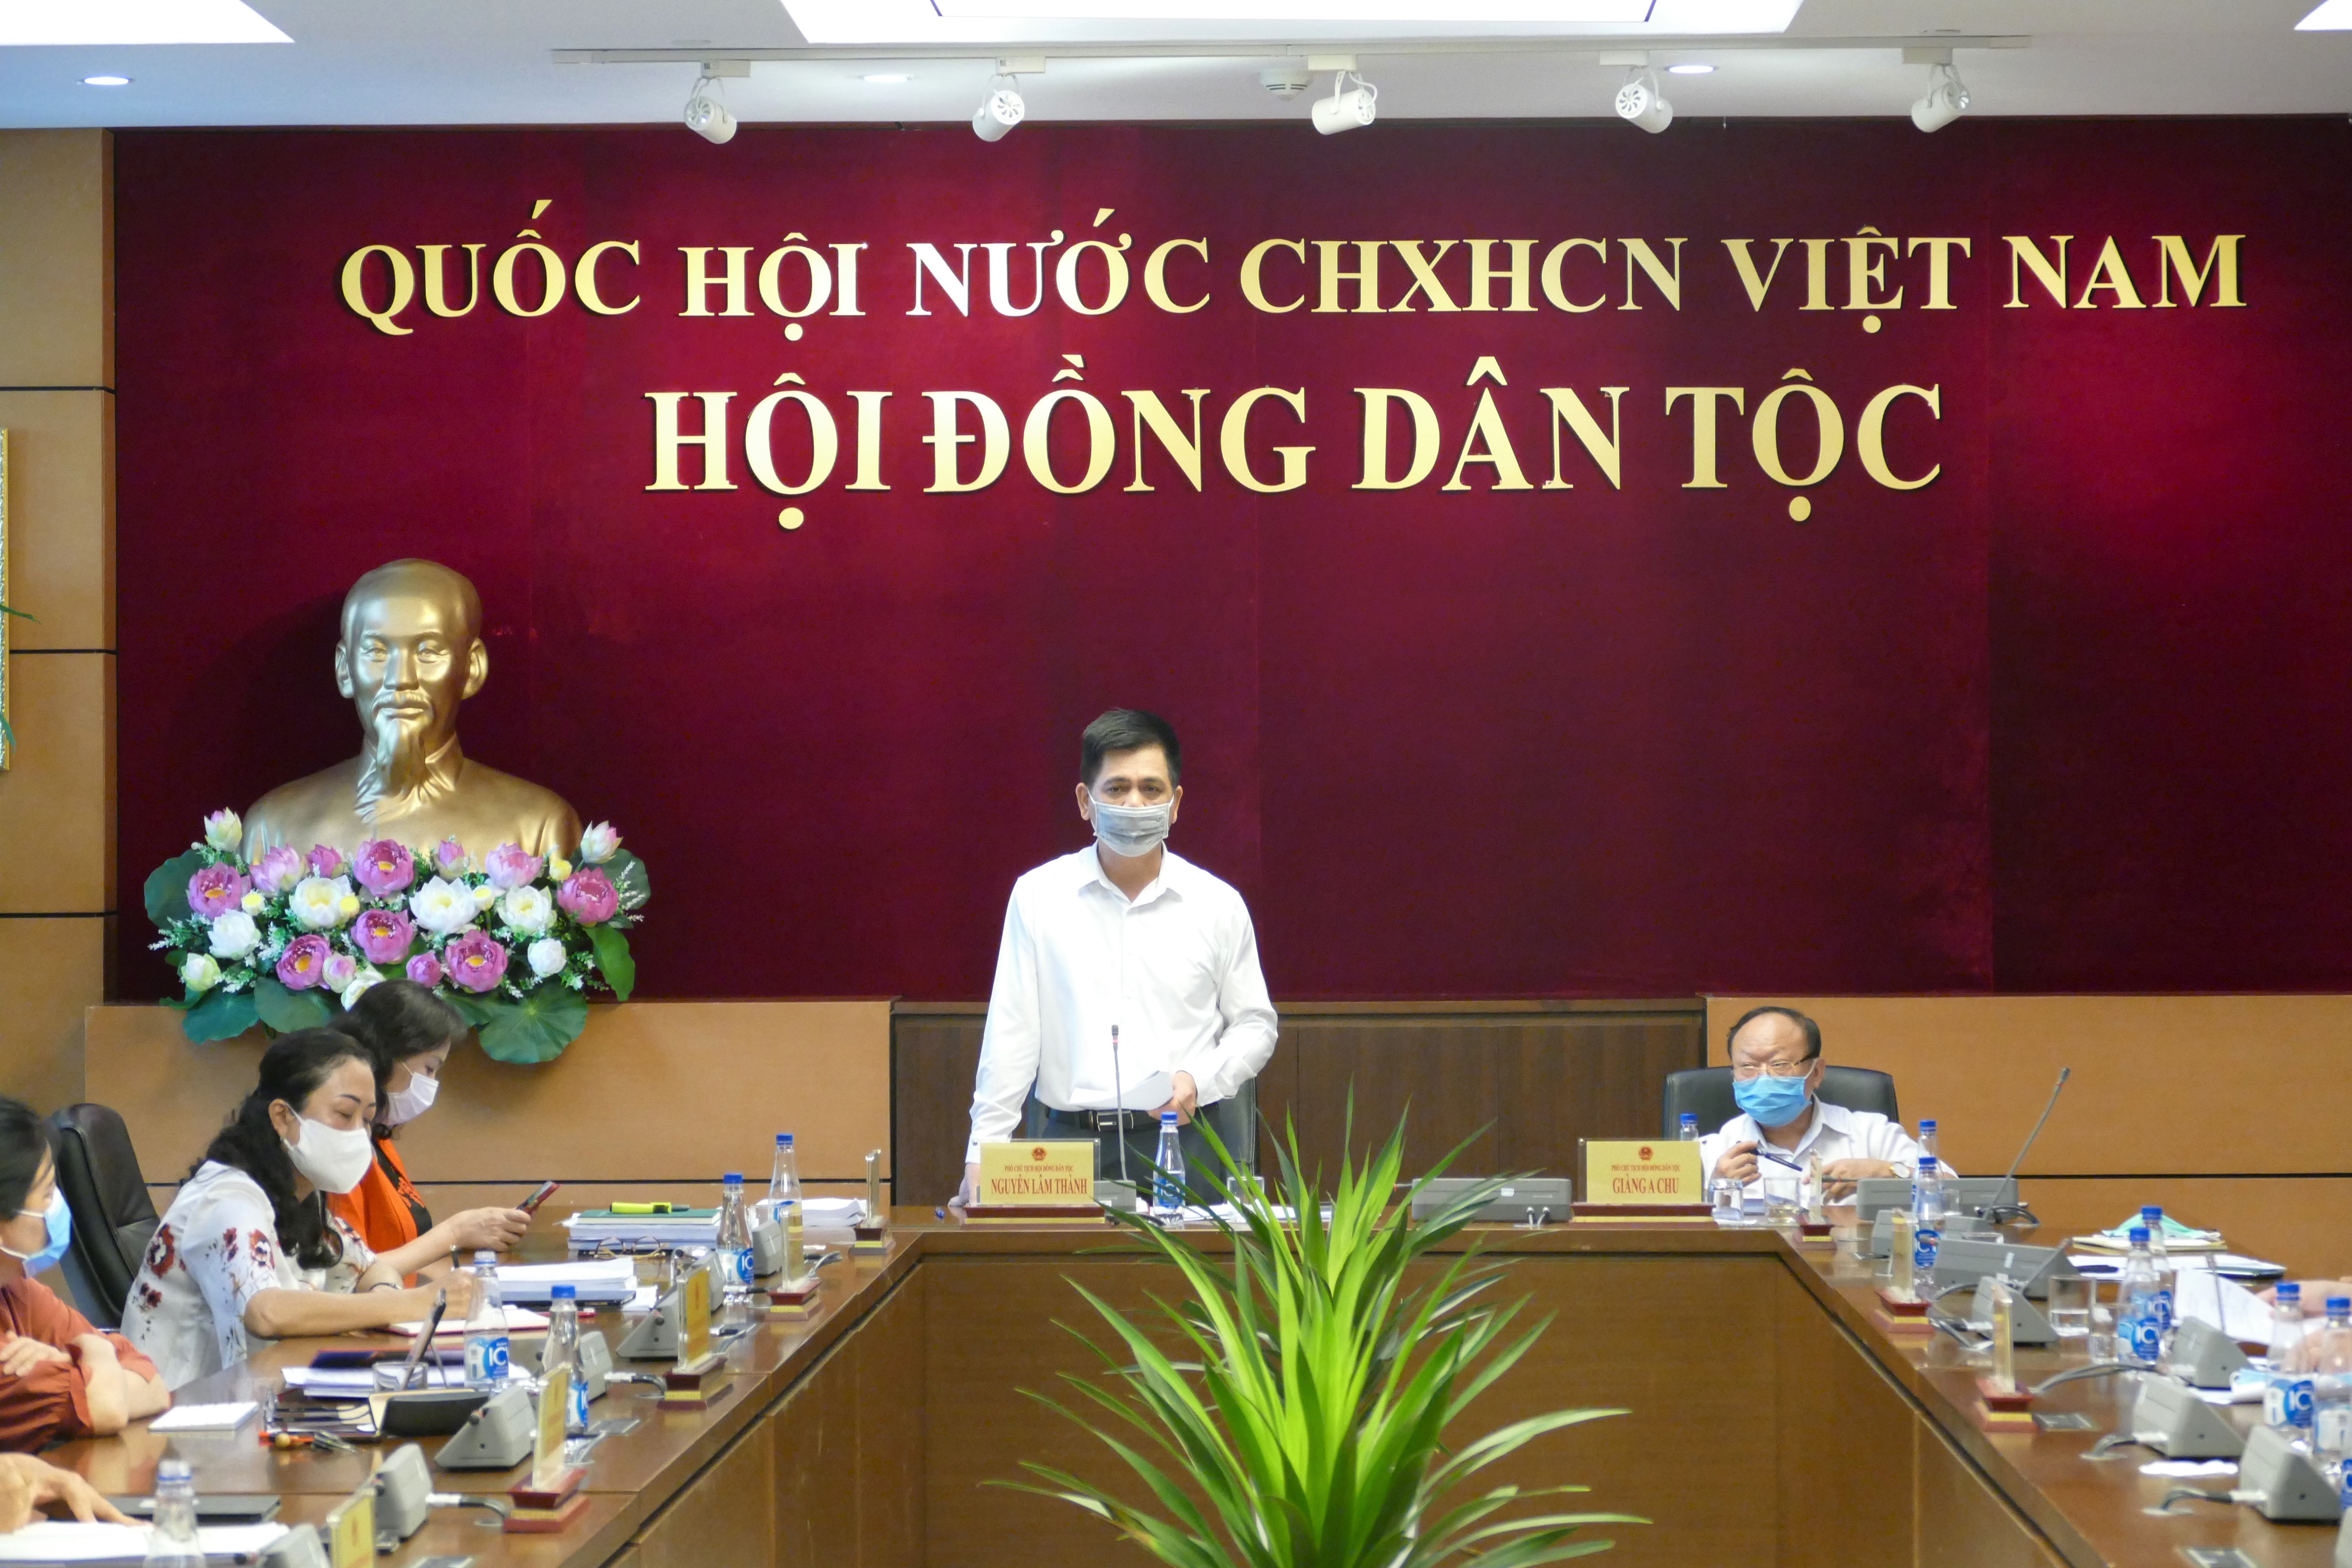 Phó Chủ tịch Hội đồng Dân tộc Nguyễn Lâm Thành phát biểu tại Hội nghị